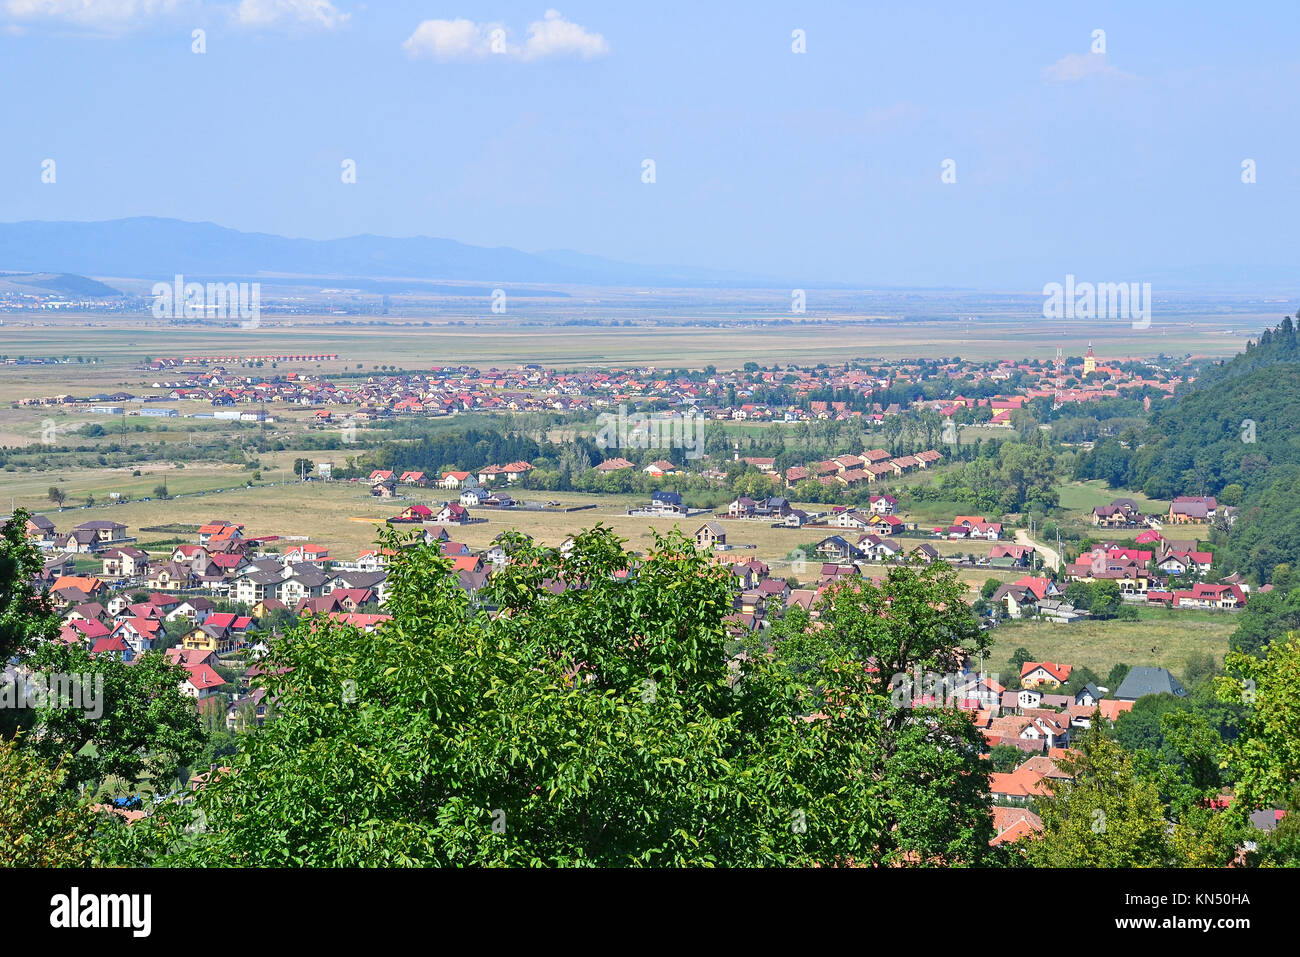 View of Rasnov city, Romania Stock Photo